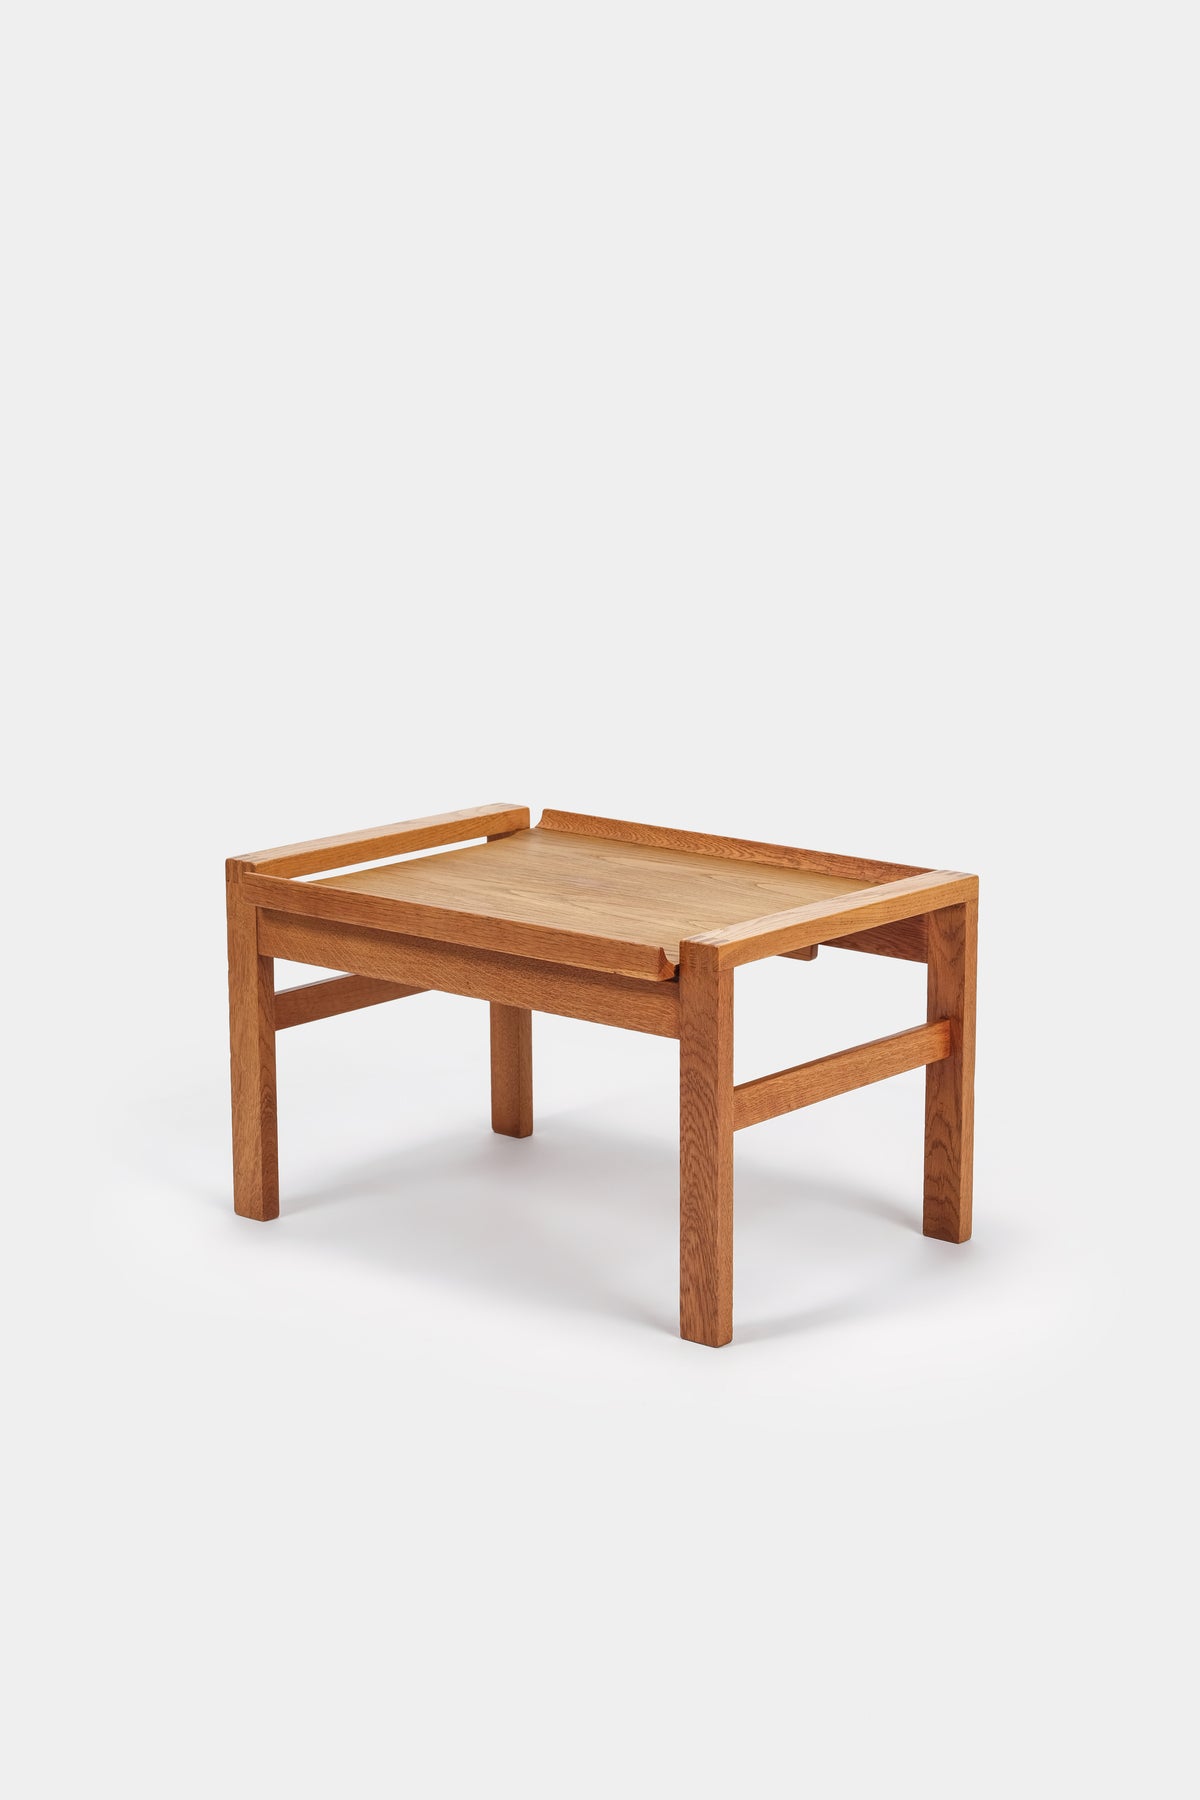 Borge Mogensen, Small Table, Denmark, 60s